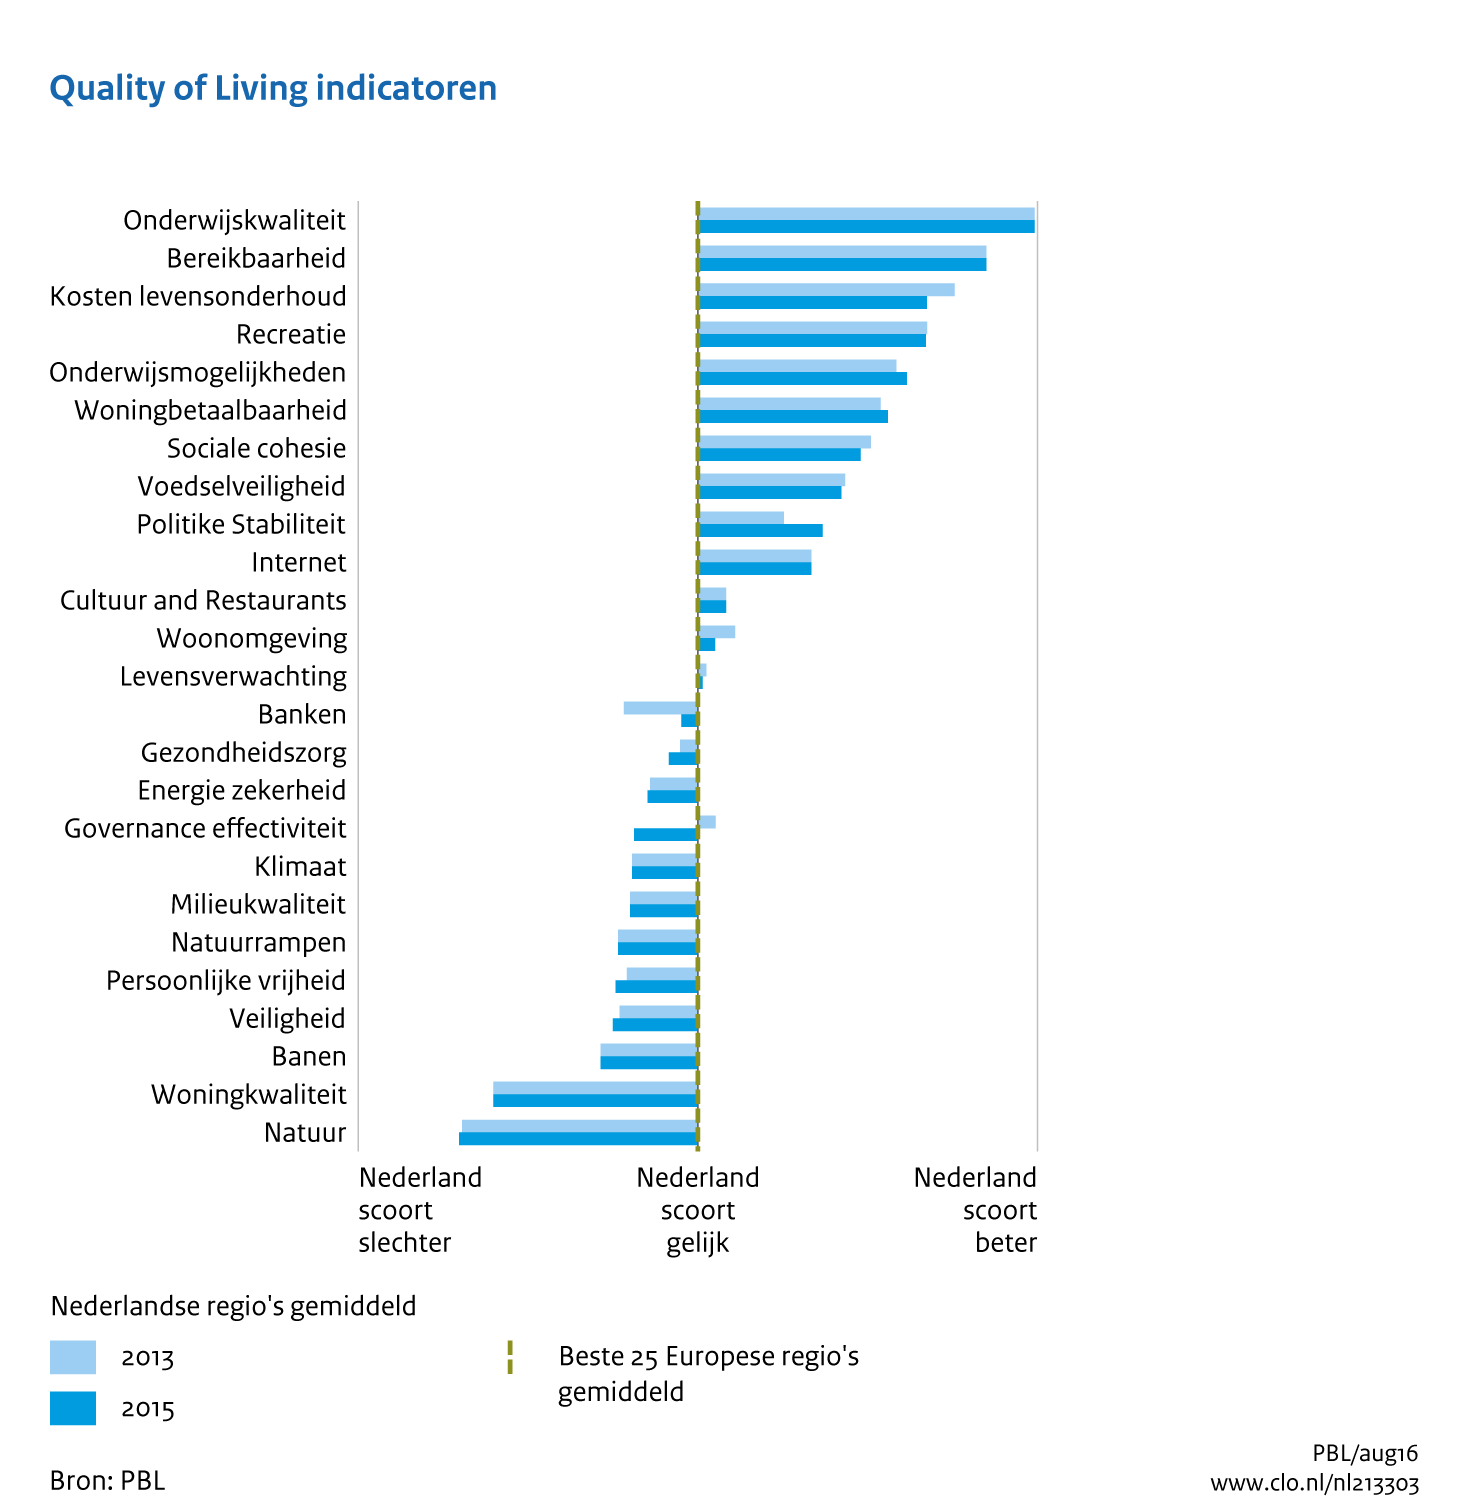 Figuur Quality of living indicatoren 2013-2015. In de rest van de tekst wordt deze figuur uitgebreider uitgelegd.